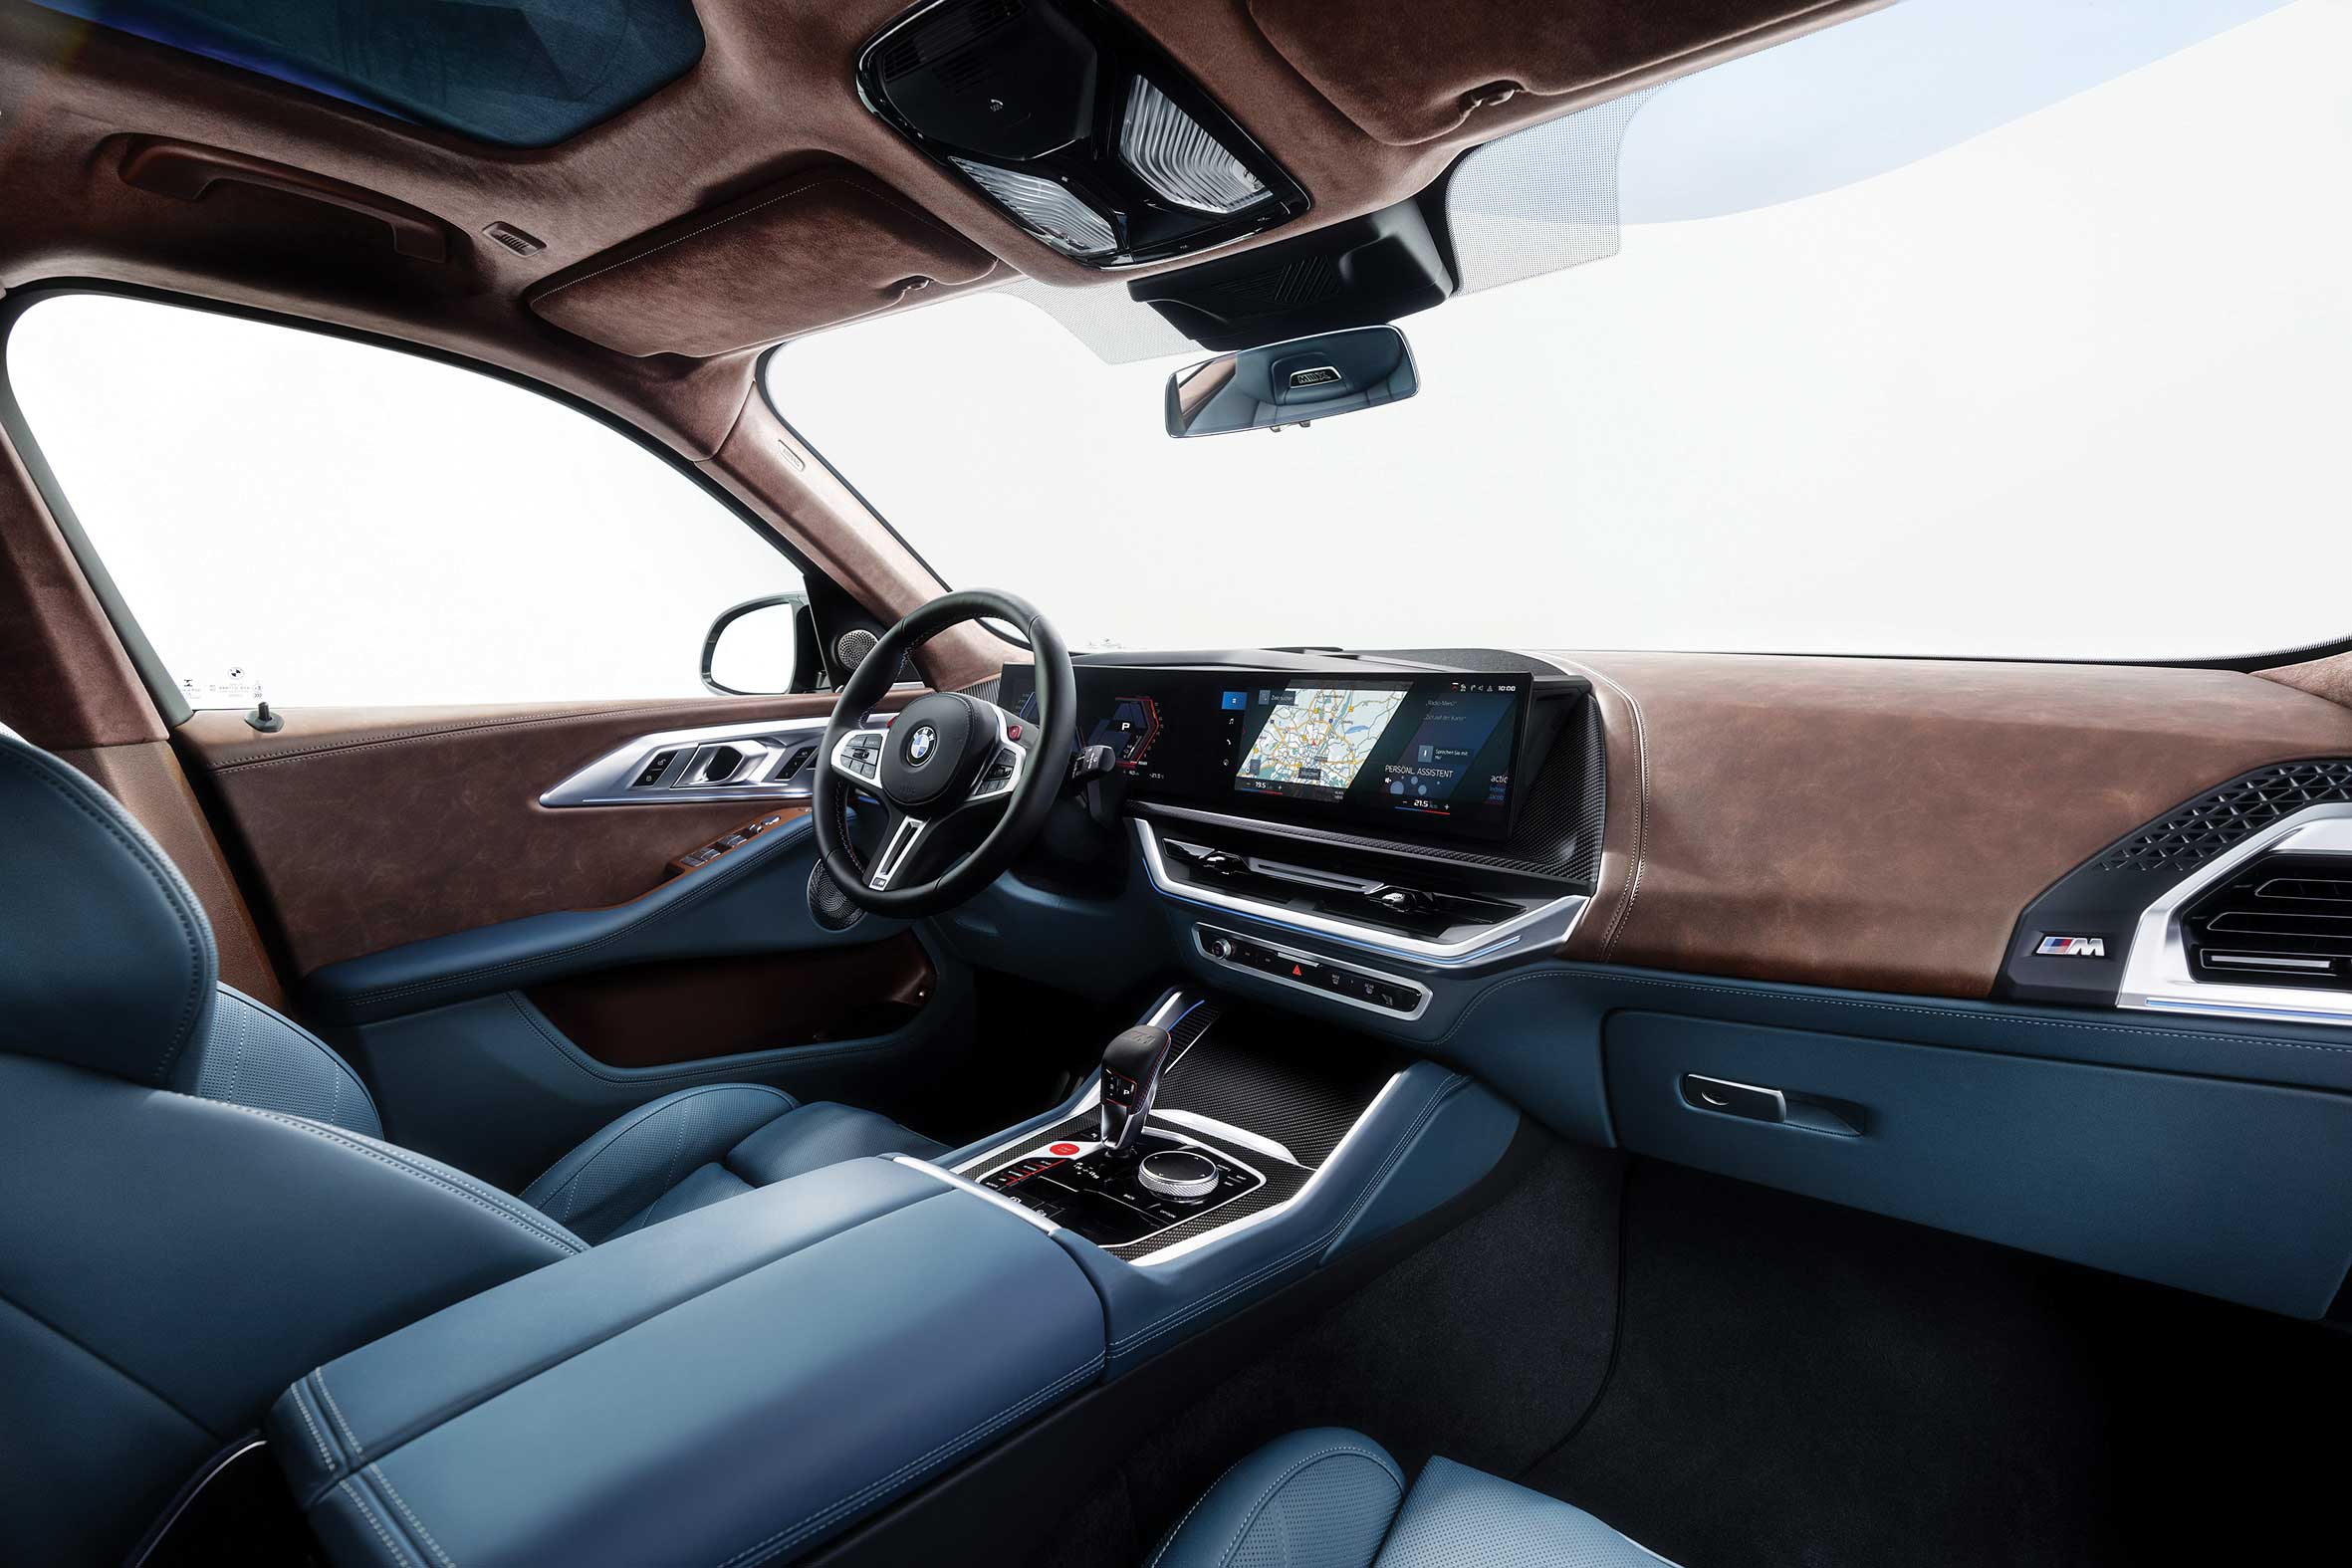 BMW’nin M modellerine özgü kavisli ekran sürüşle ilgili tüm detayları sağlıyor.